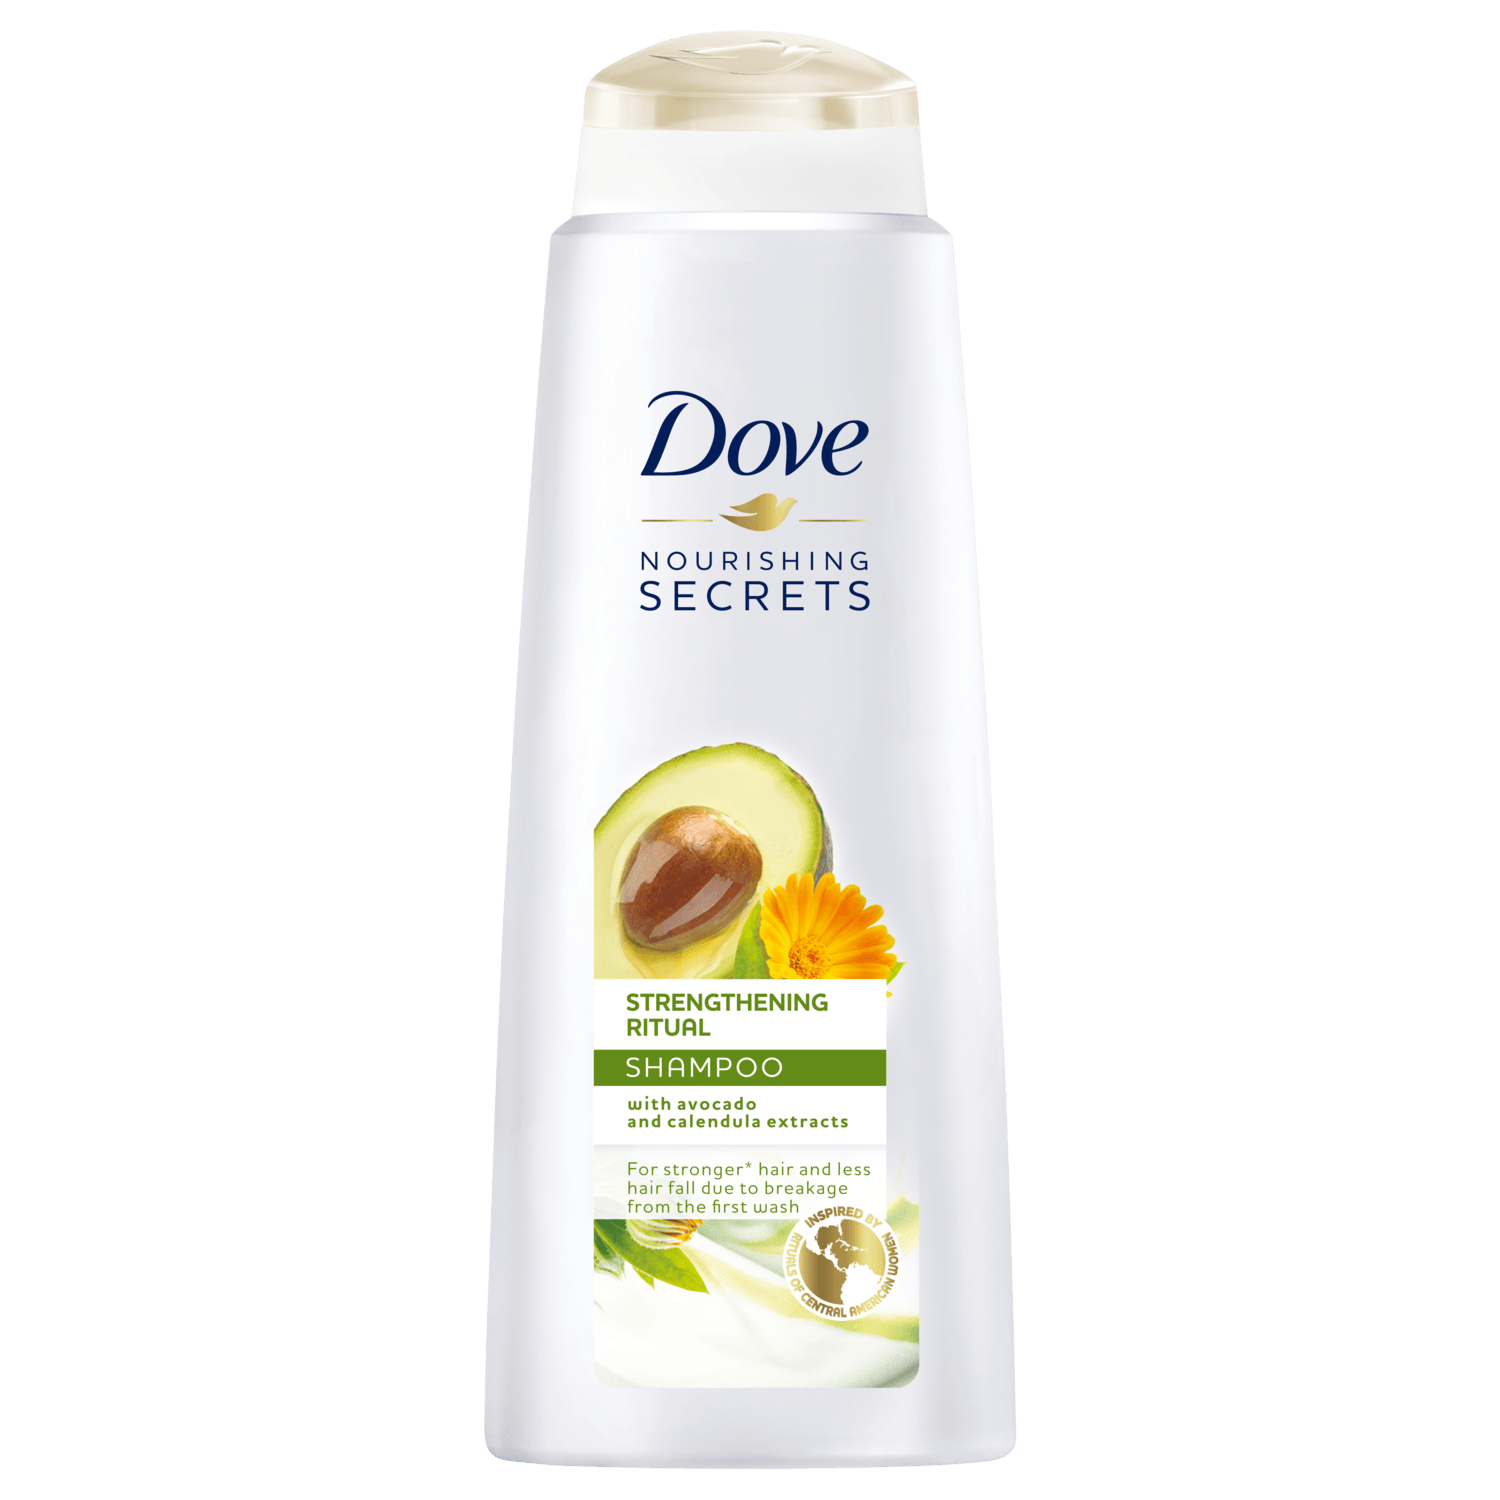 Dove Nourishing Secrets Shampoo 400mlDove Nourishing Secrets Strengthening Ritual Shampoo 400mlorabelca